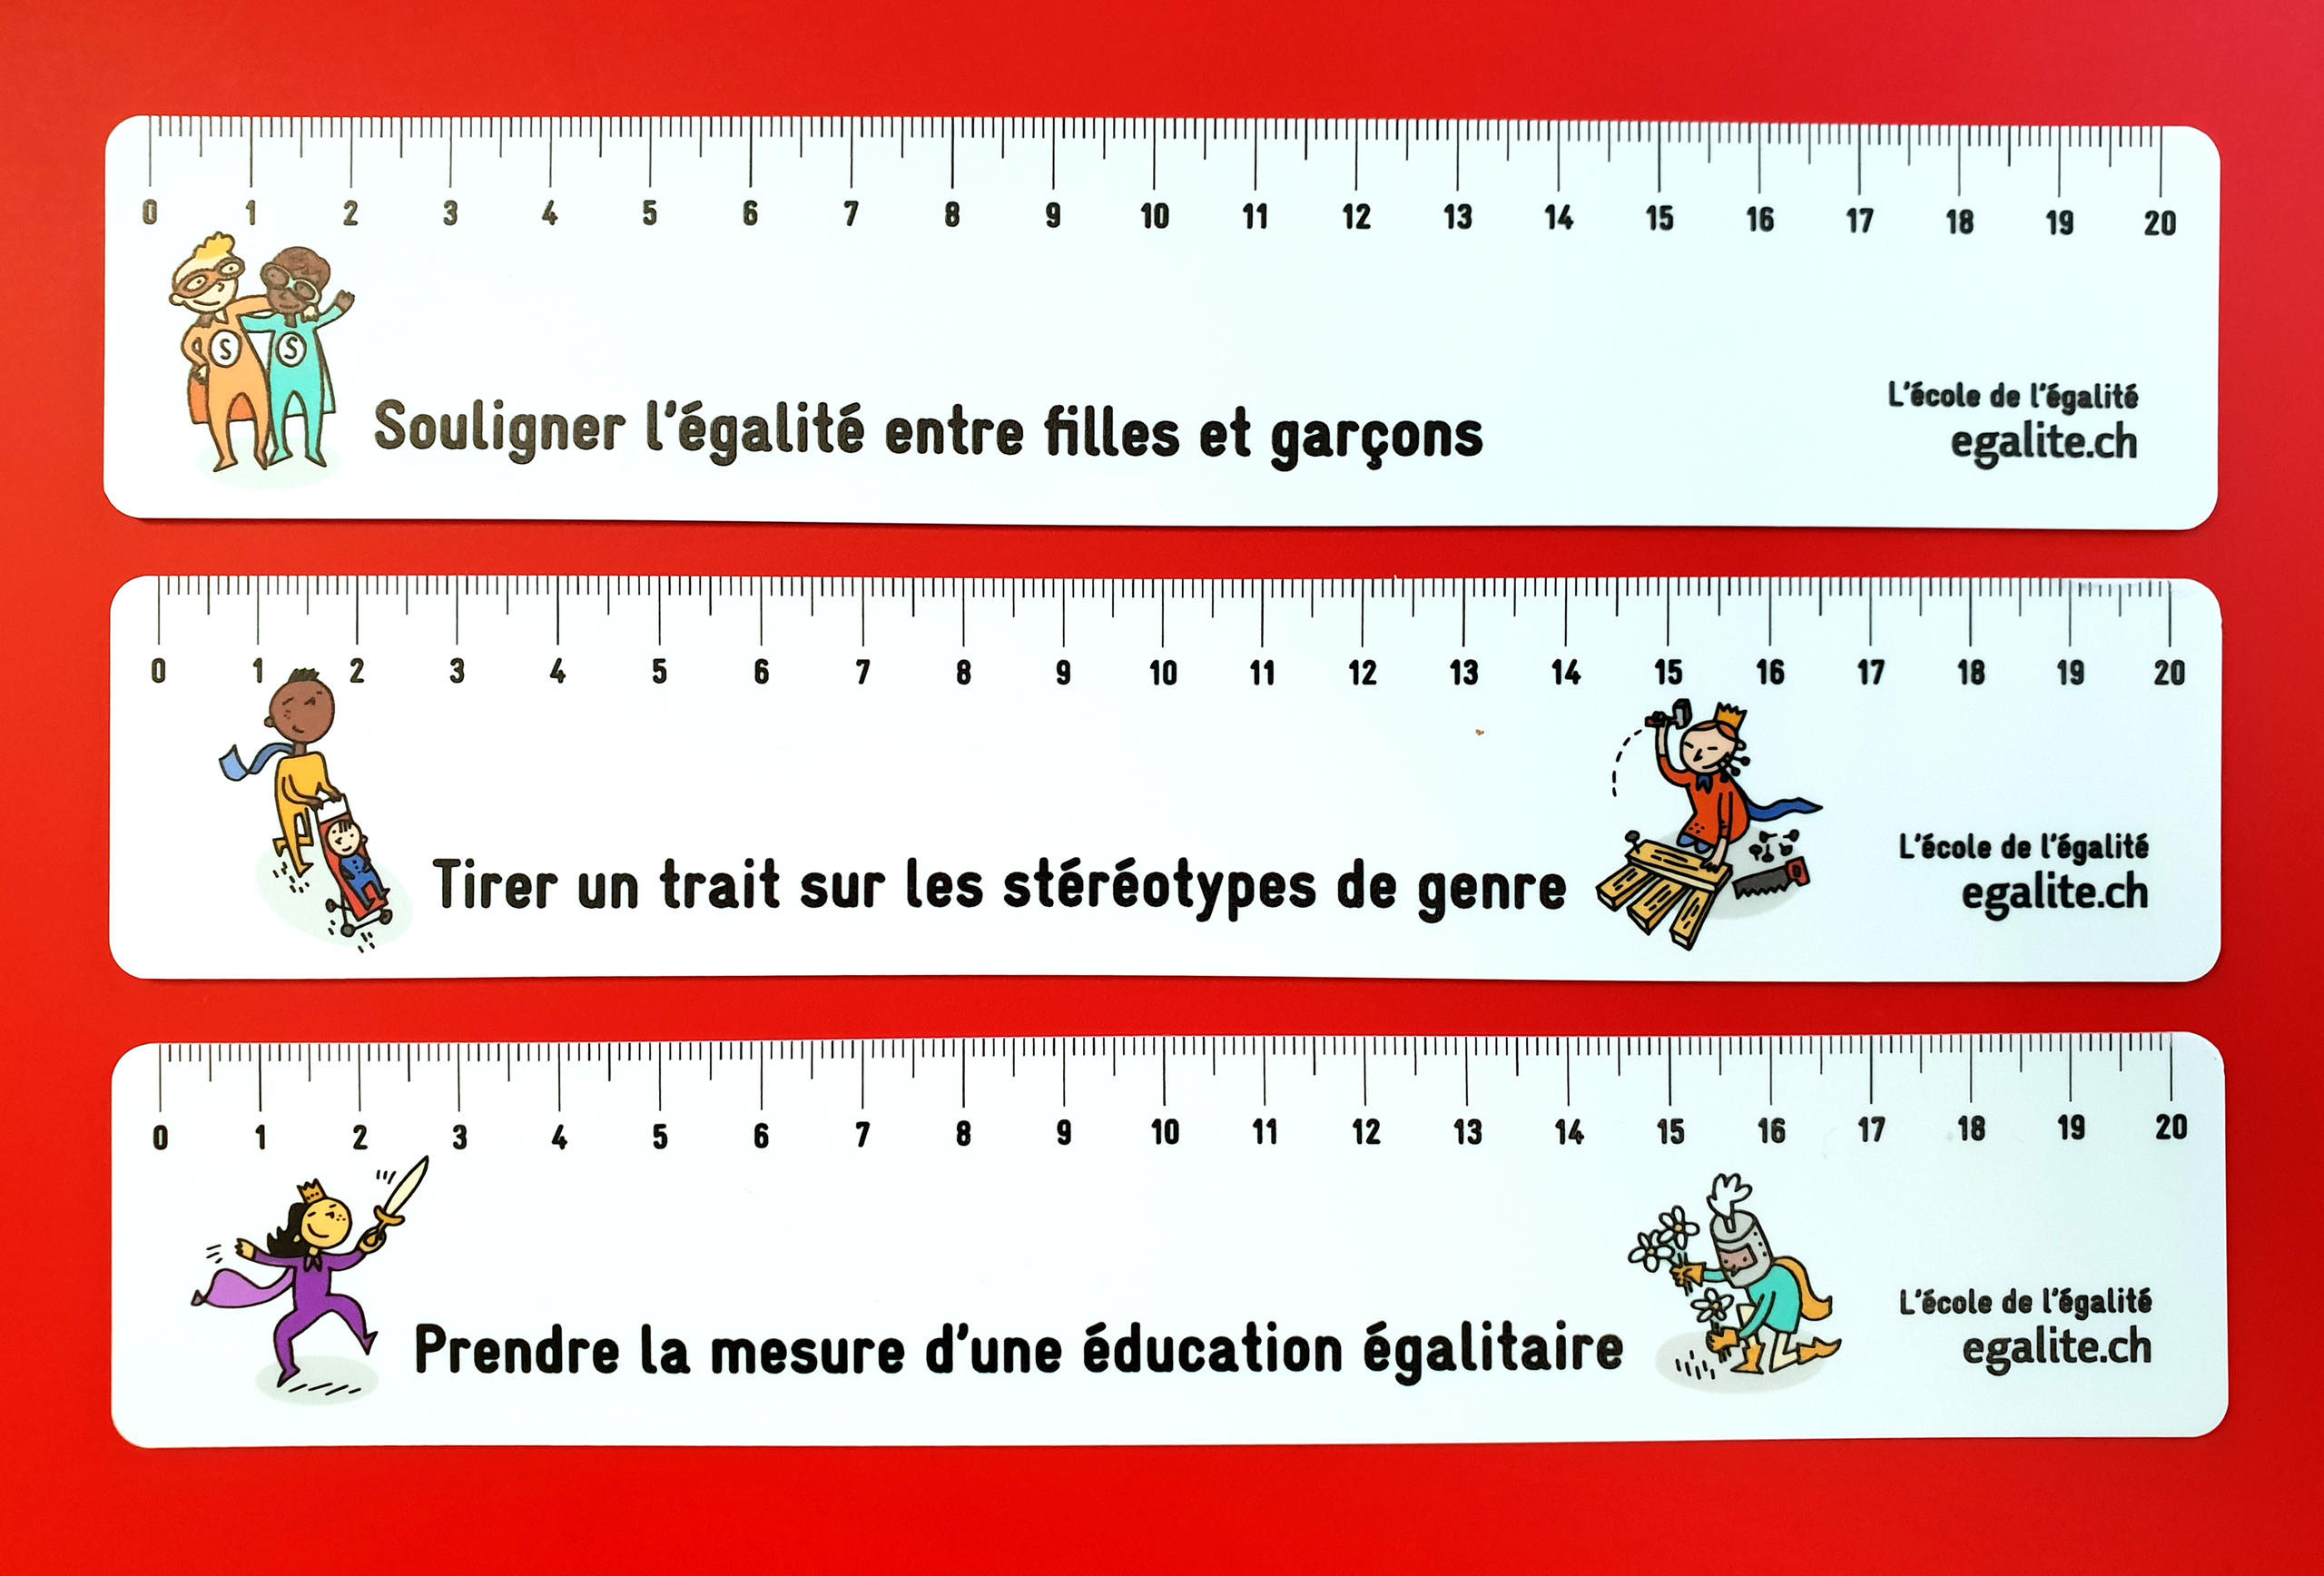 (fumetto) tre righelli allineati; su ognuno di essi è riportata (in francese) una delle regole enunciate nella didascalia